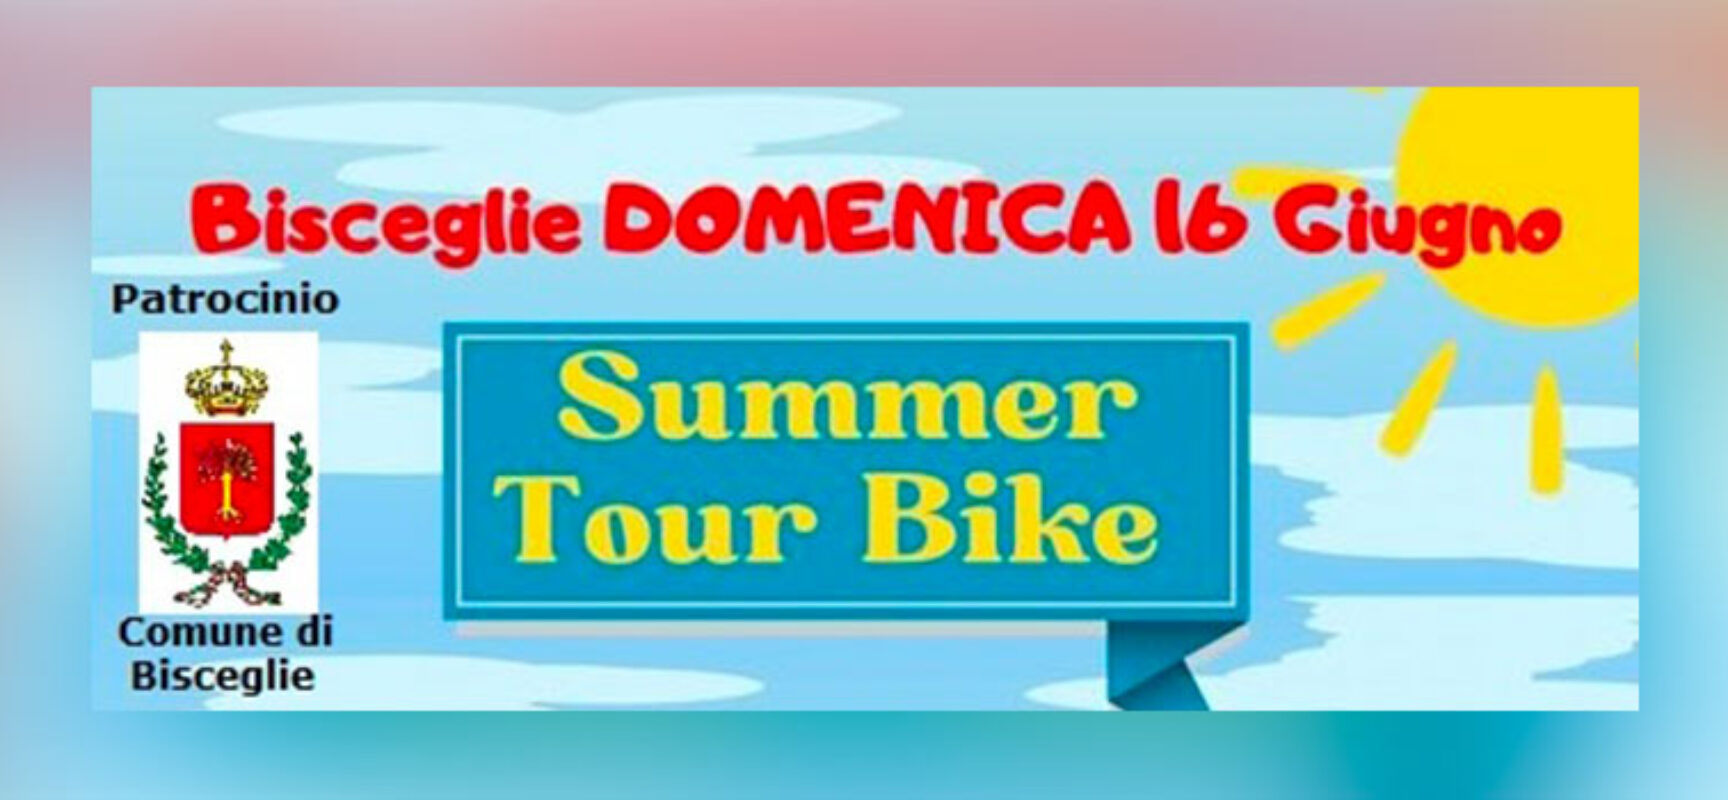 A Bisceglie il Summer Tour Bike, passeggiata in bici nell’agro